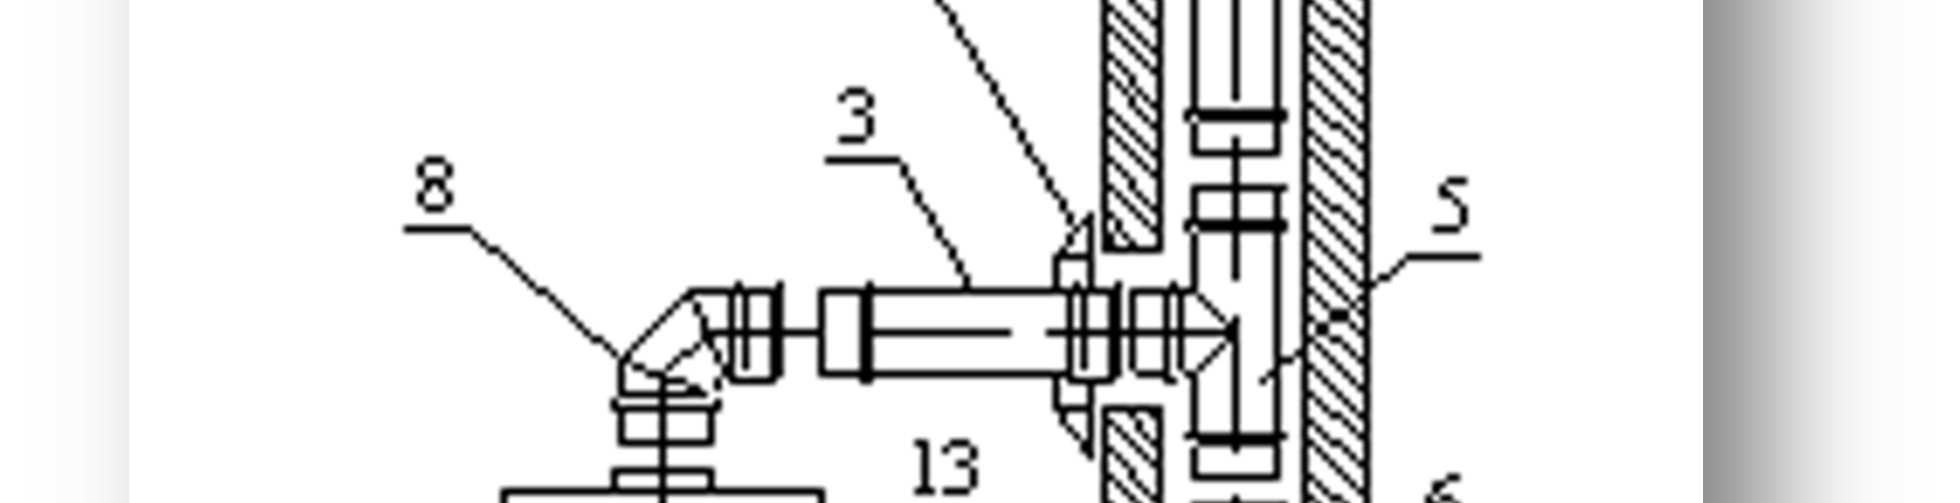 TYPOWA KONSTRUKCJA KOMINA Typowa konstrukcja komina składa się z następujących elementów: rury proste: KZS-R10, KZS-R05, KZS-R02, KZS-RT, KZS-RU, trójnik element łączący czopuch z kominem: KZS-TR45,